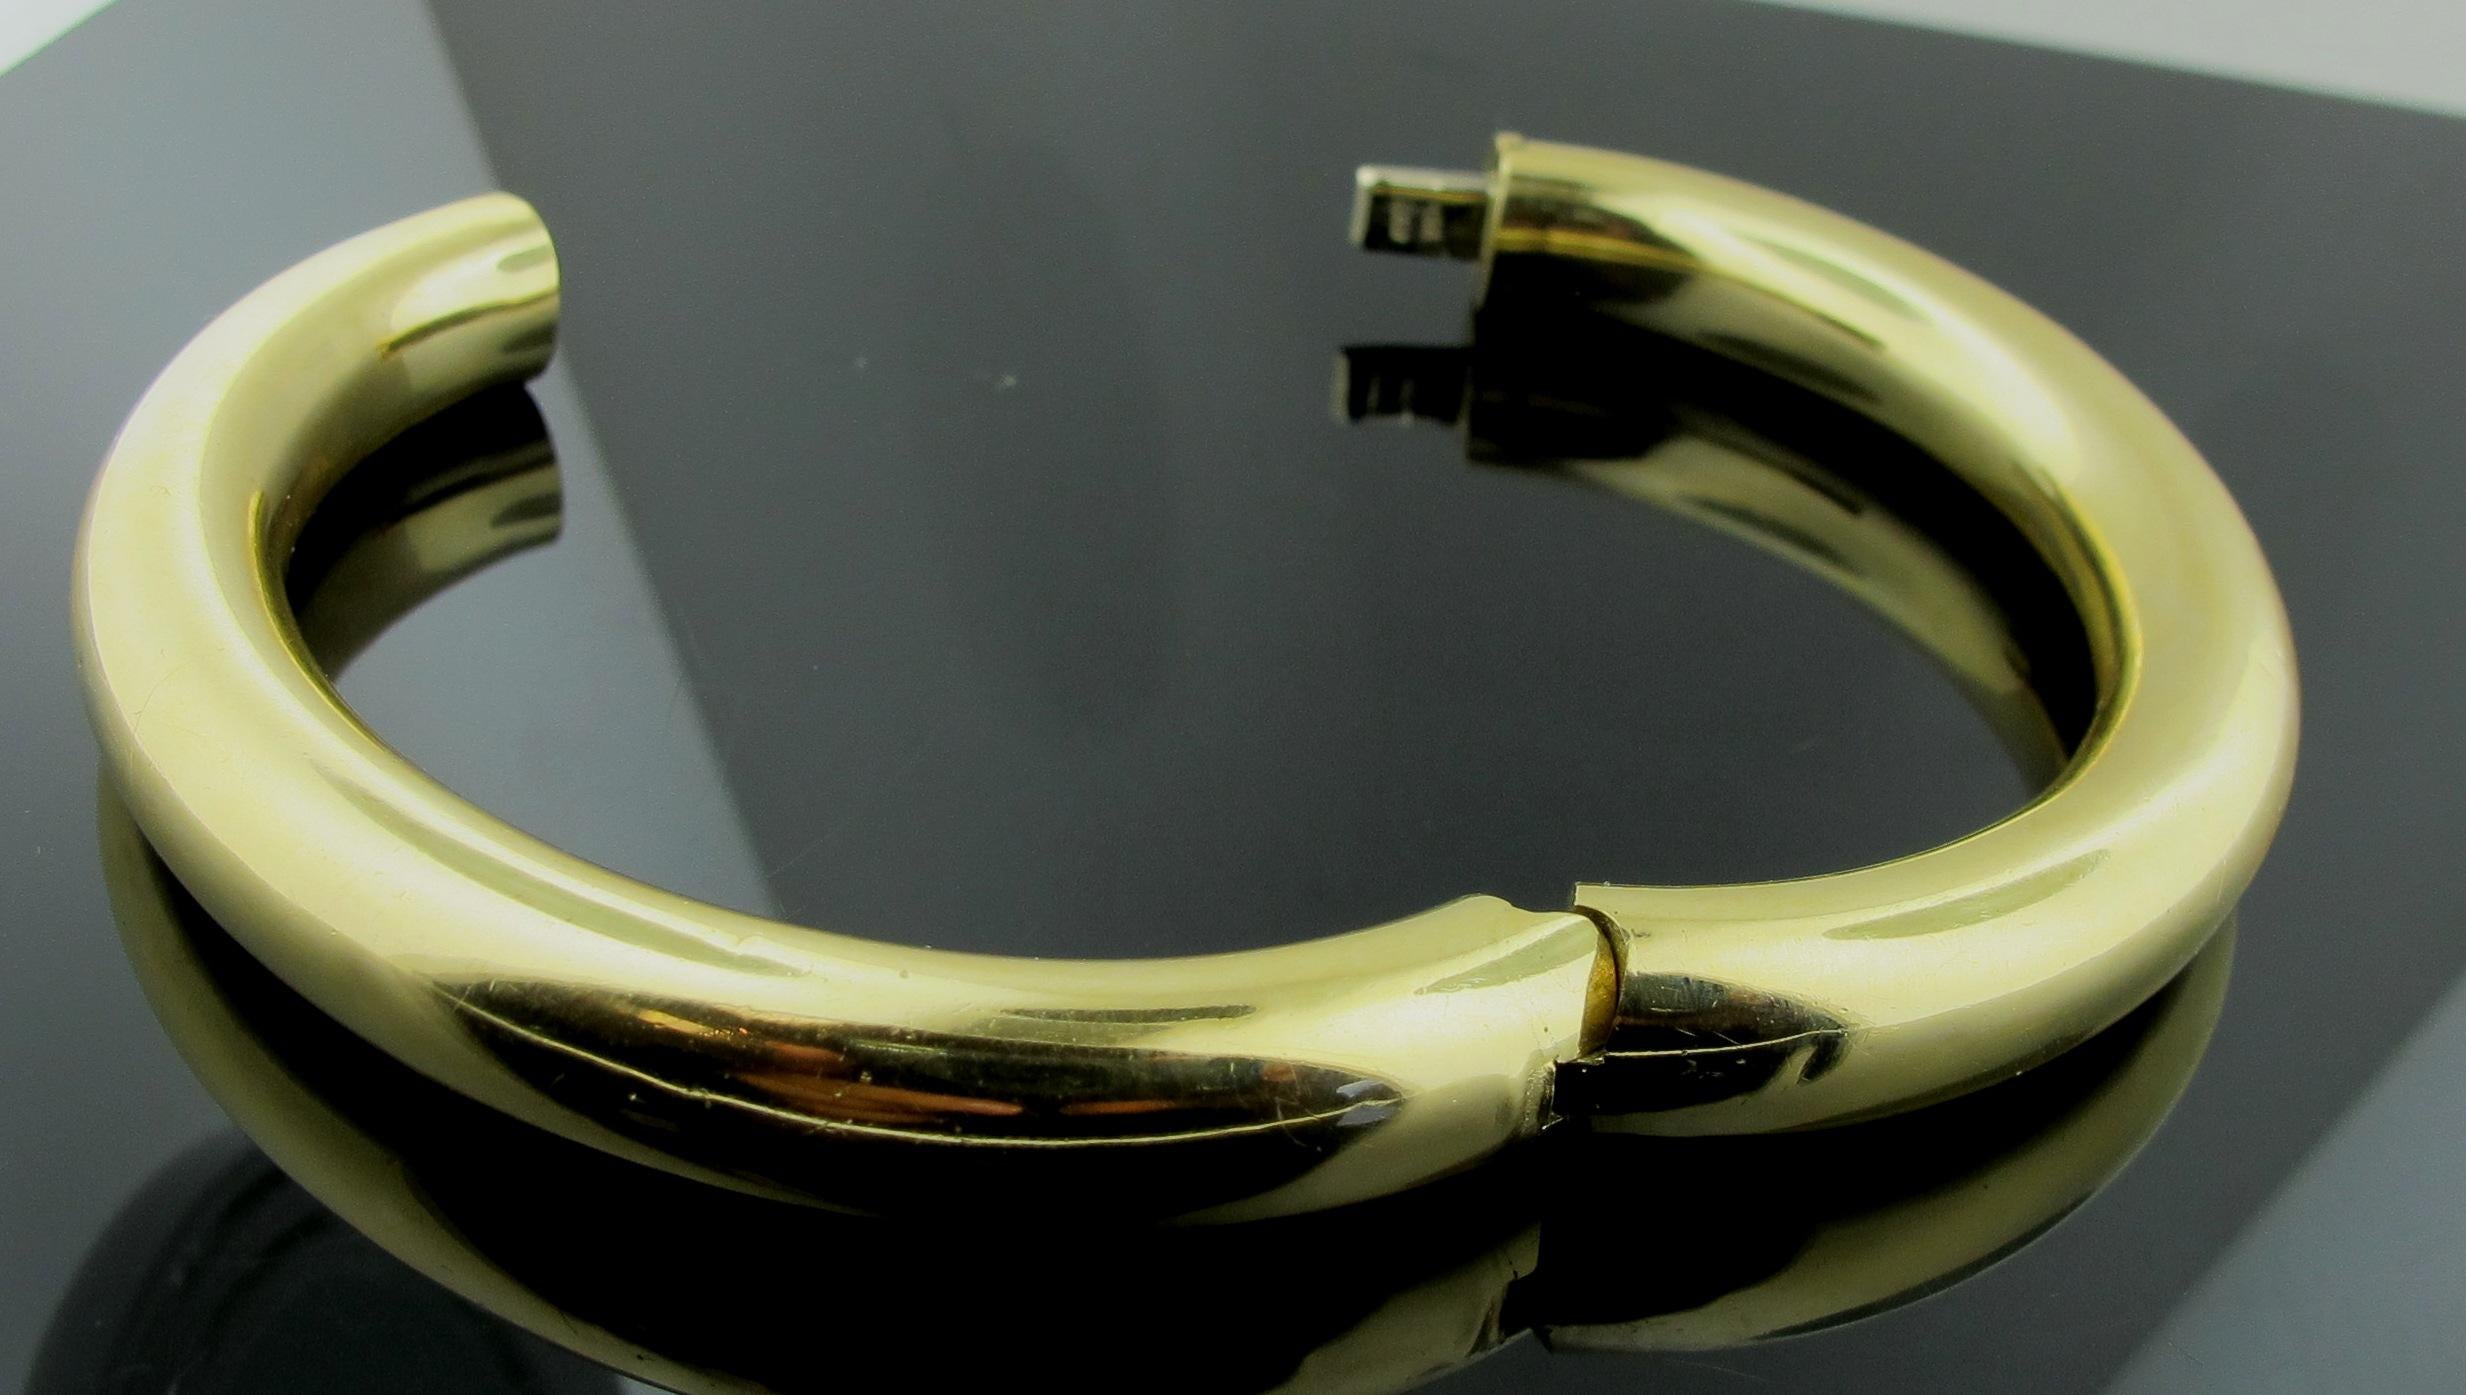 18k gold hinged bangle bracelet